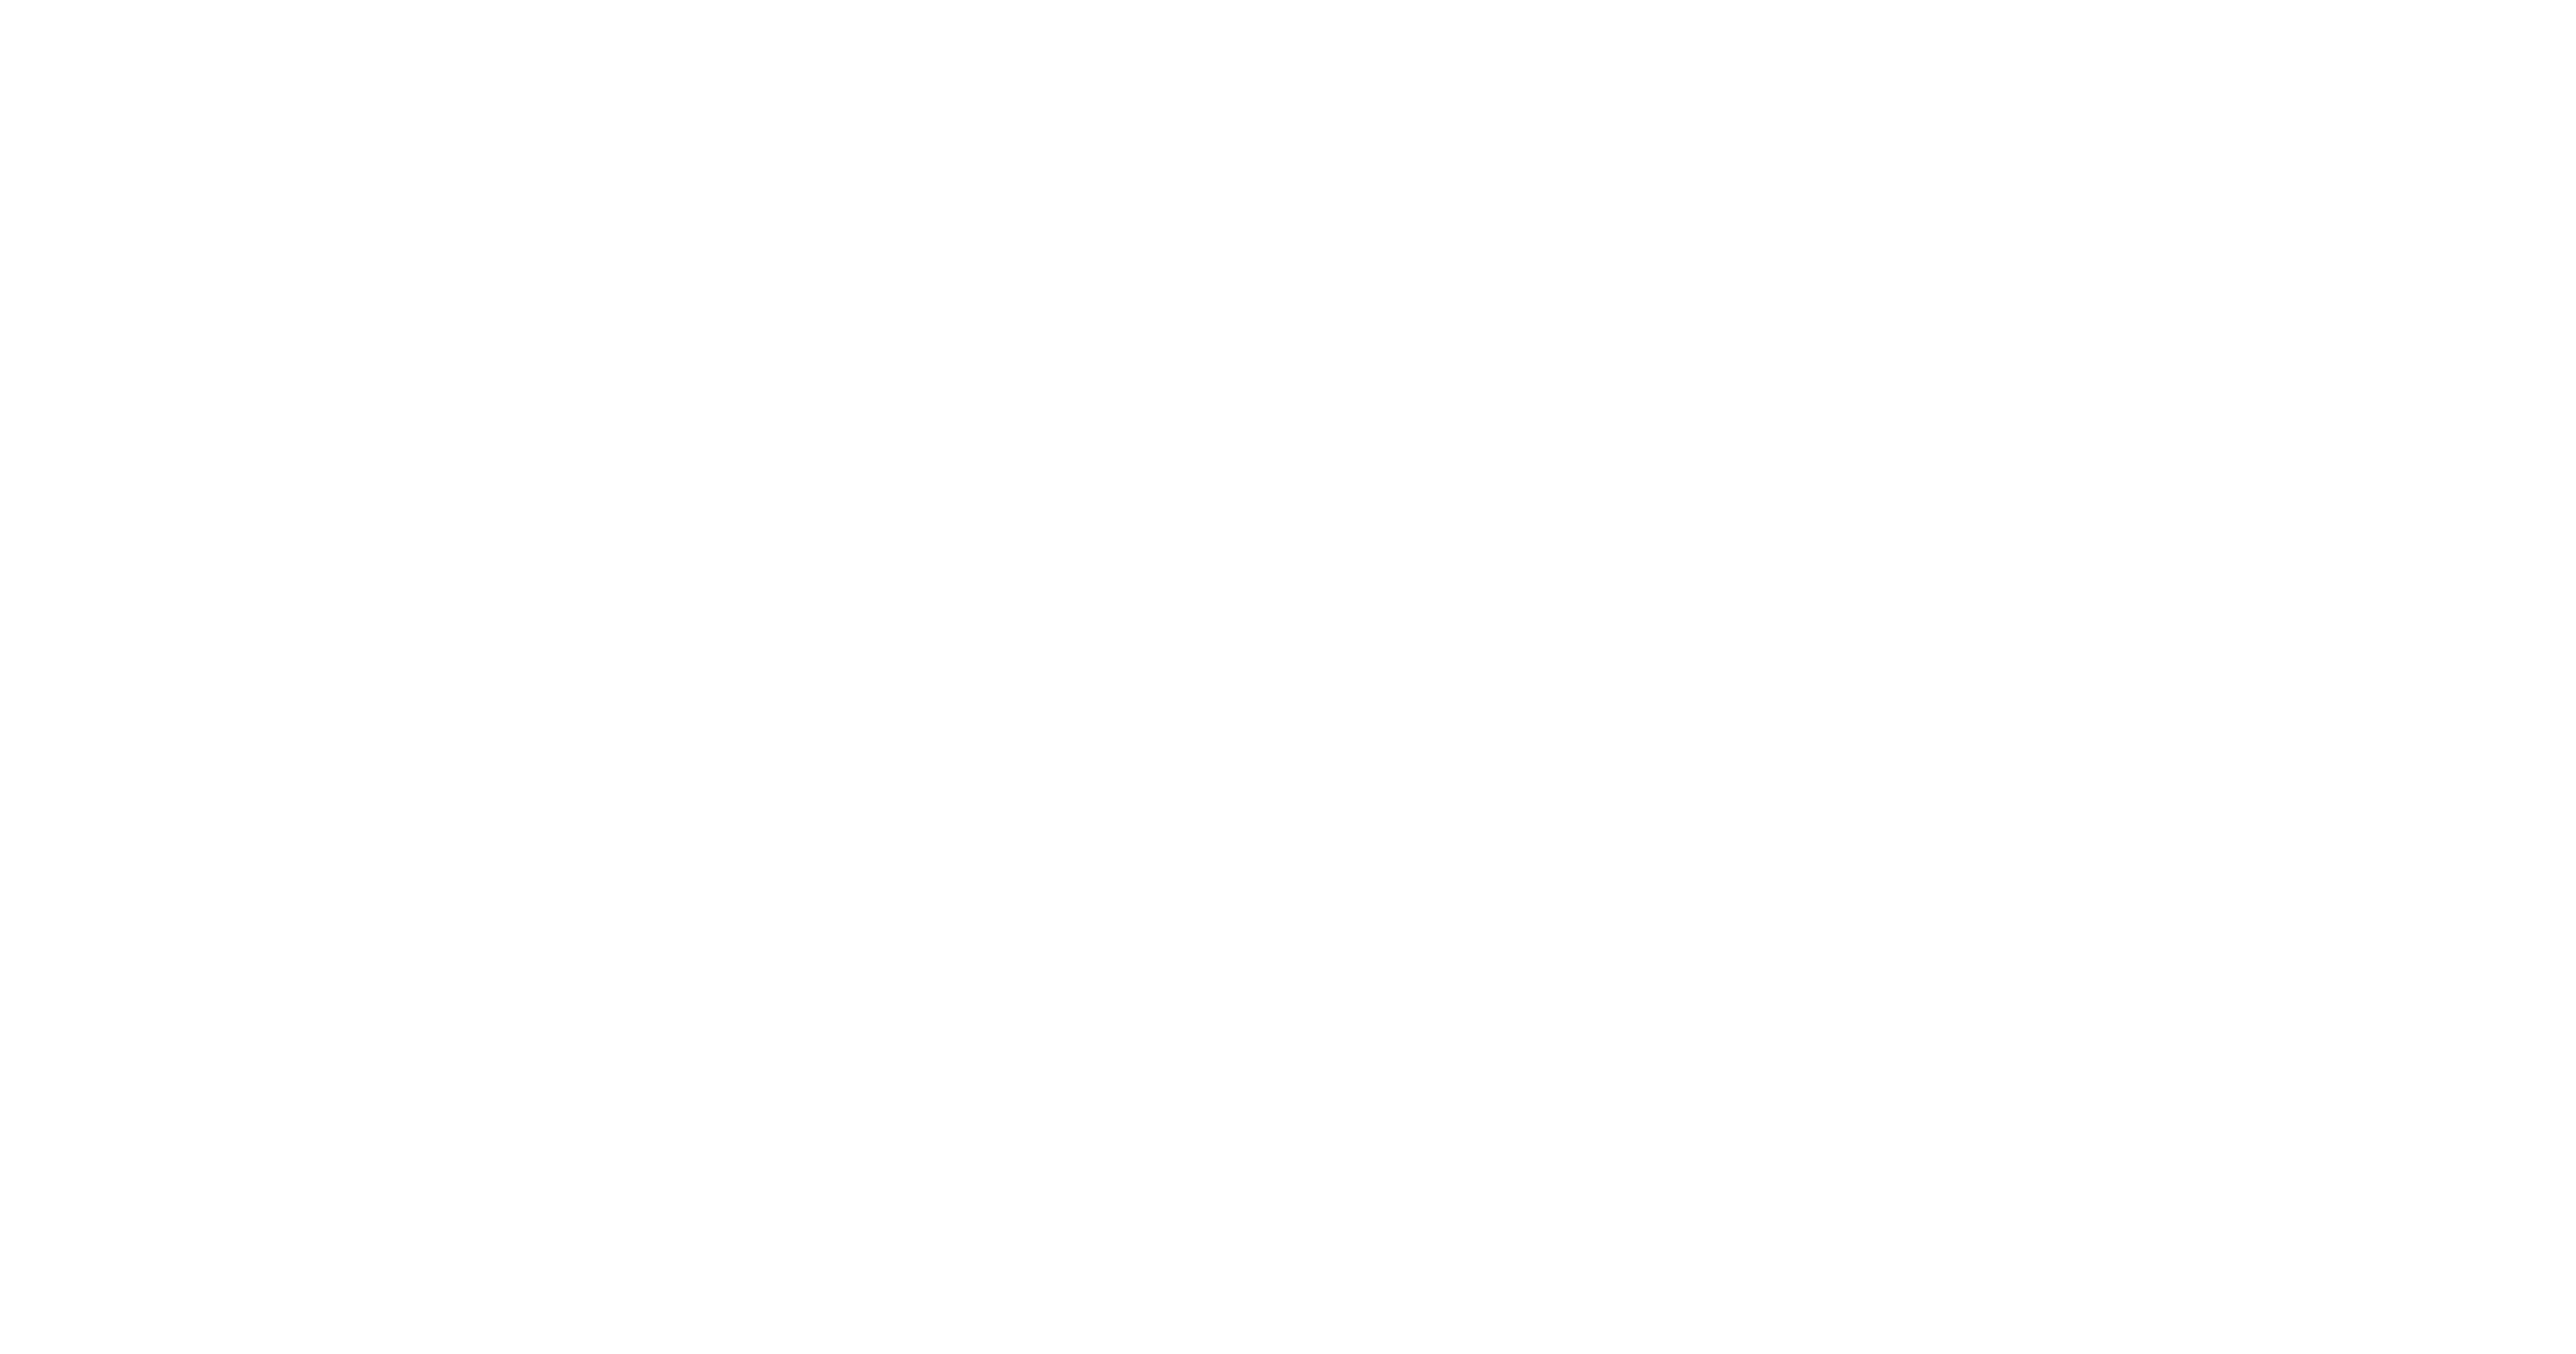 Next Generation You - Fondazione Compagnia di San Paolo